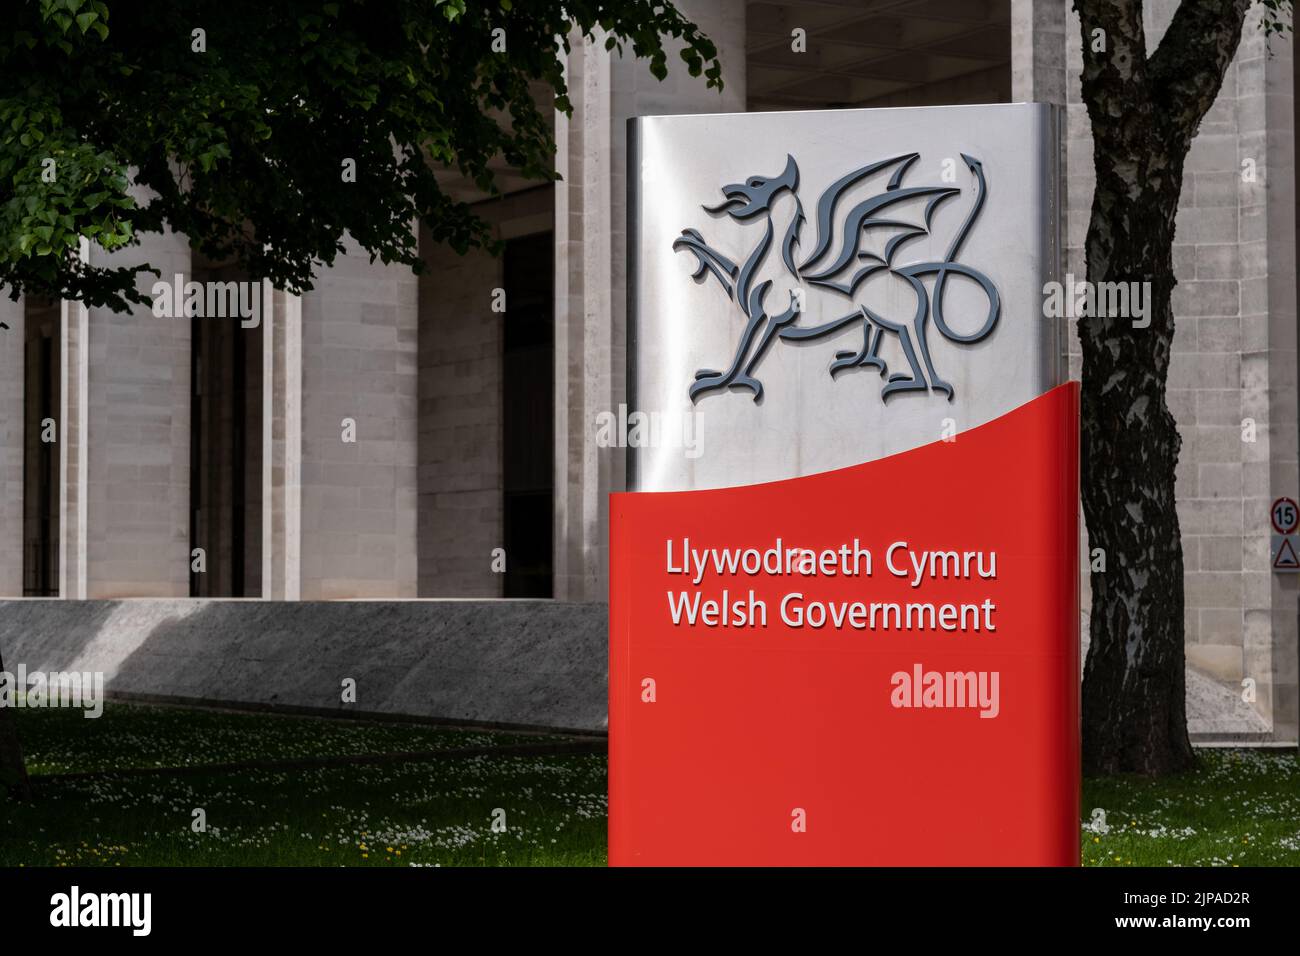 Ein Zeichen für die walisische Regierung (auf Walisisch: Llywodraeth Cymru) vor einem Regierungsgebäude in Cardiff, Wales, Großbritannien Stockfoto